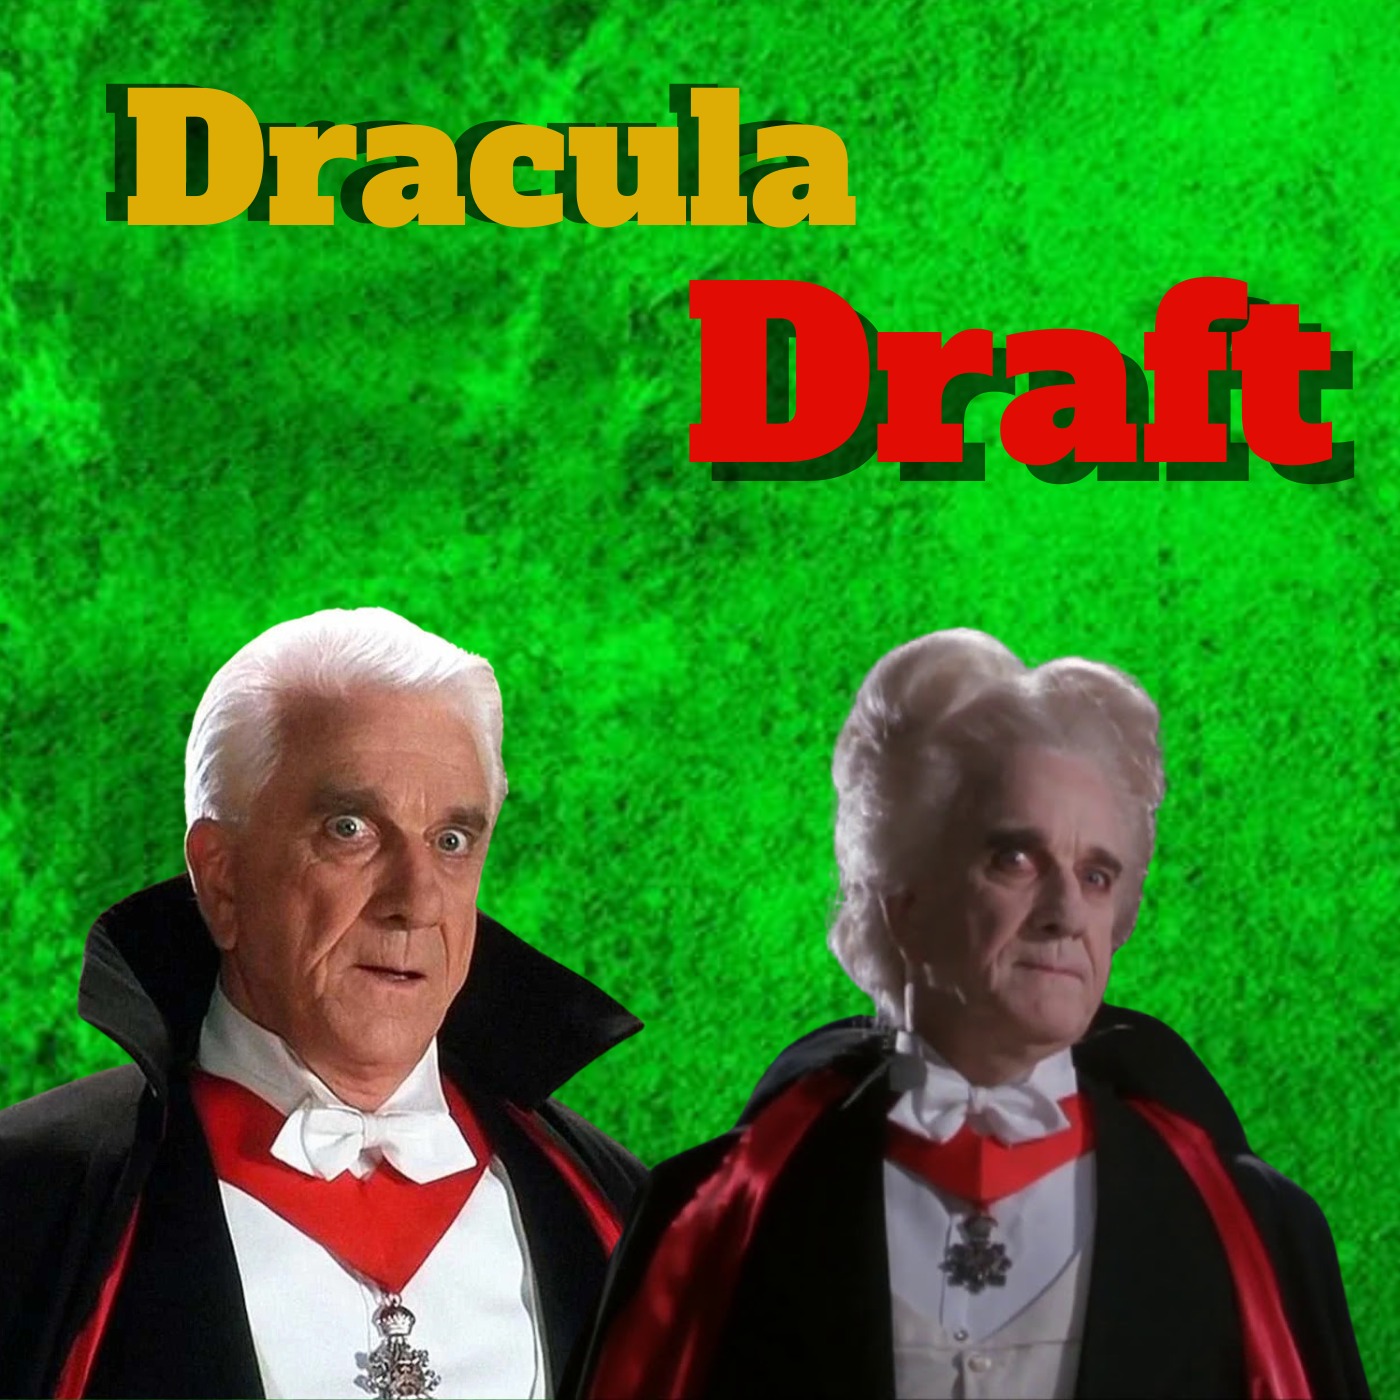 Dracula Vampire League Live Draft